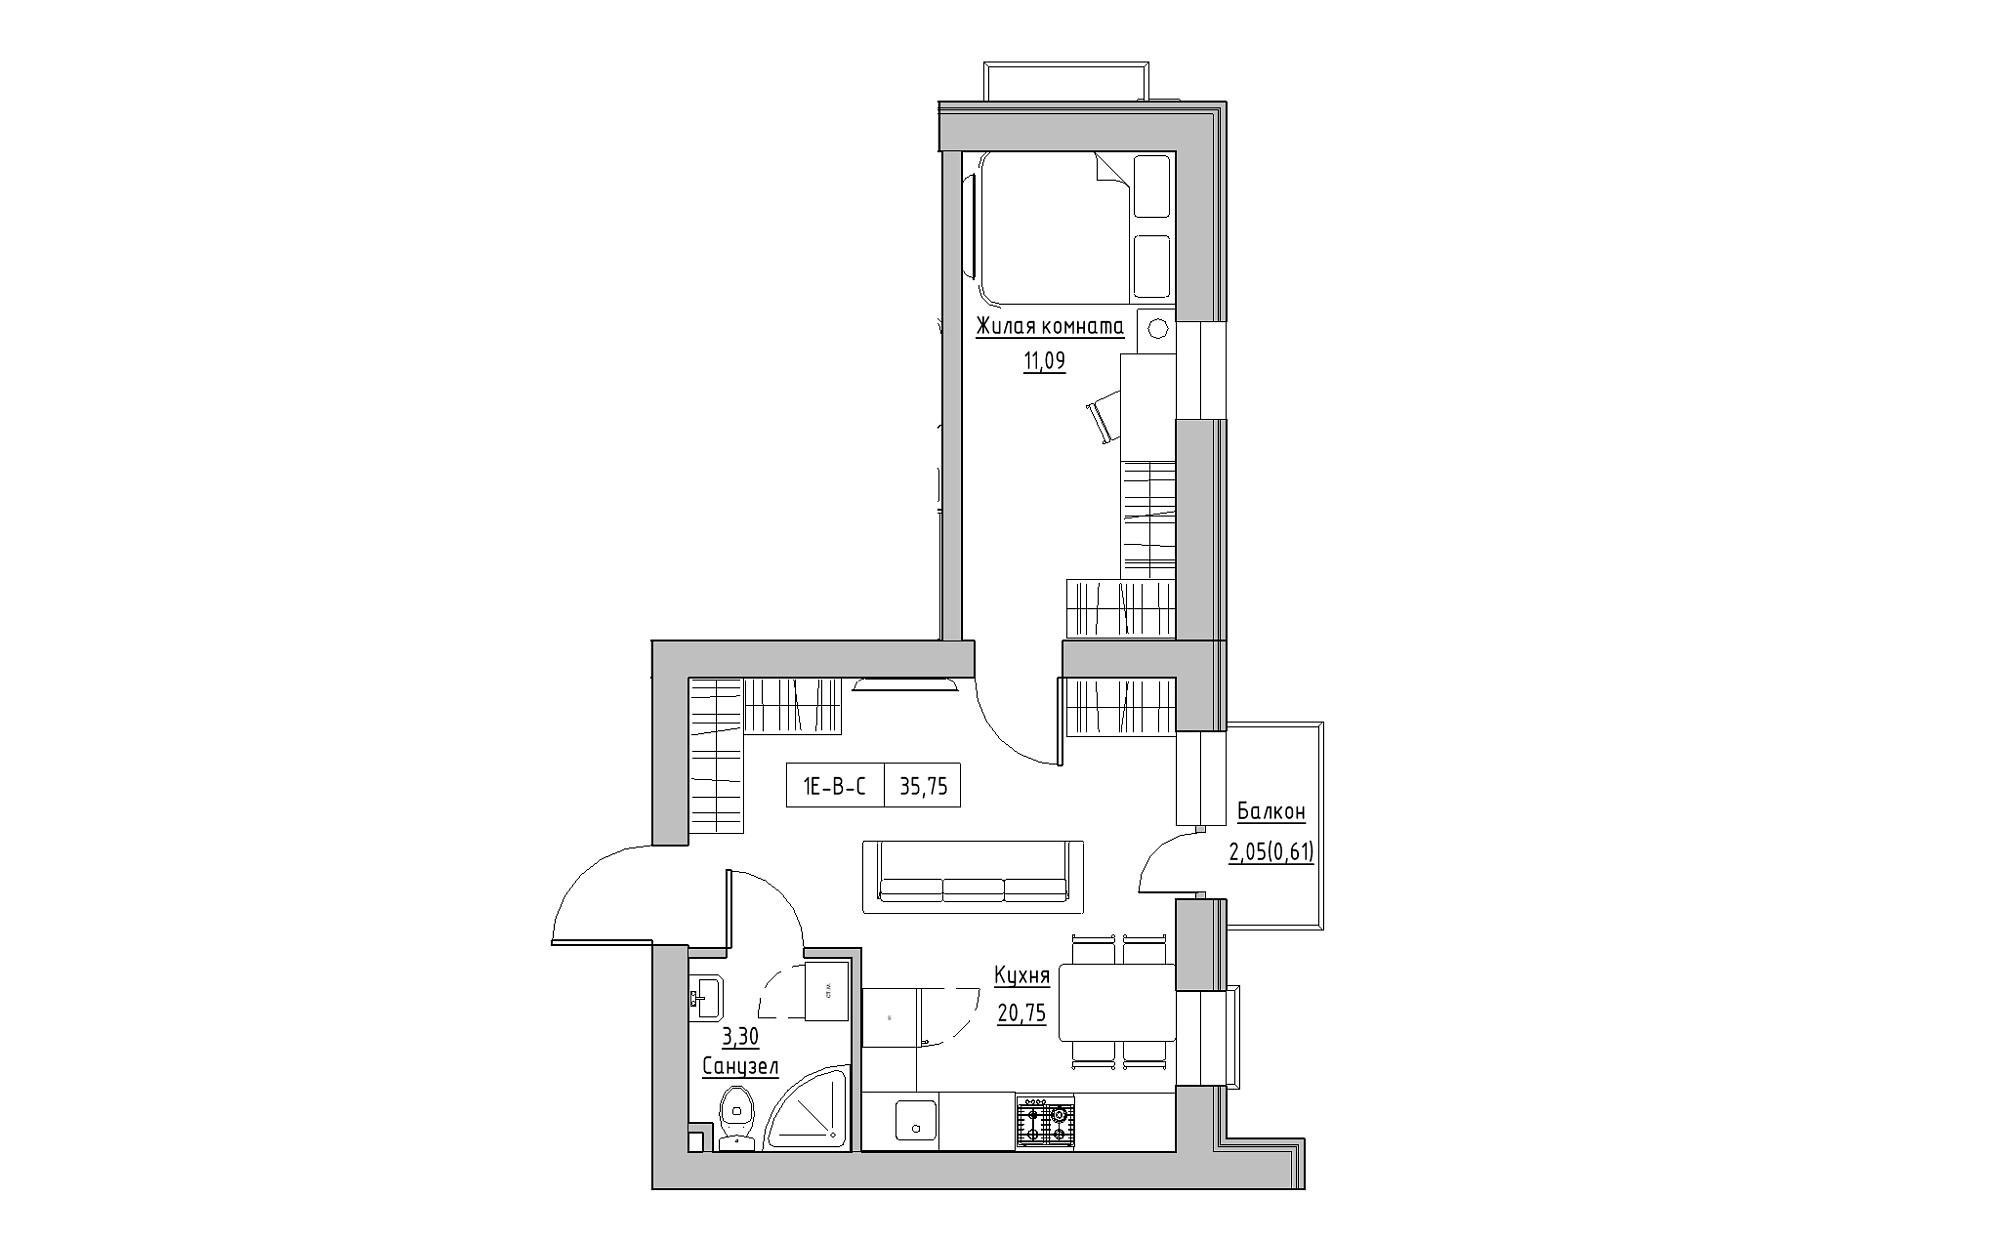 Планировка 1-к квартира площей 35.75м2, KS-022-02/0009.